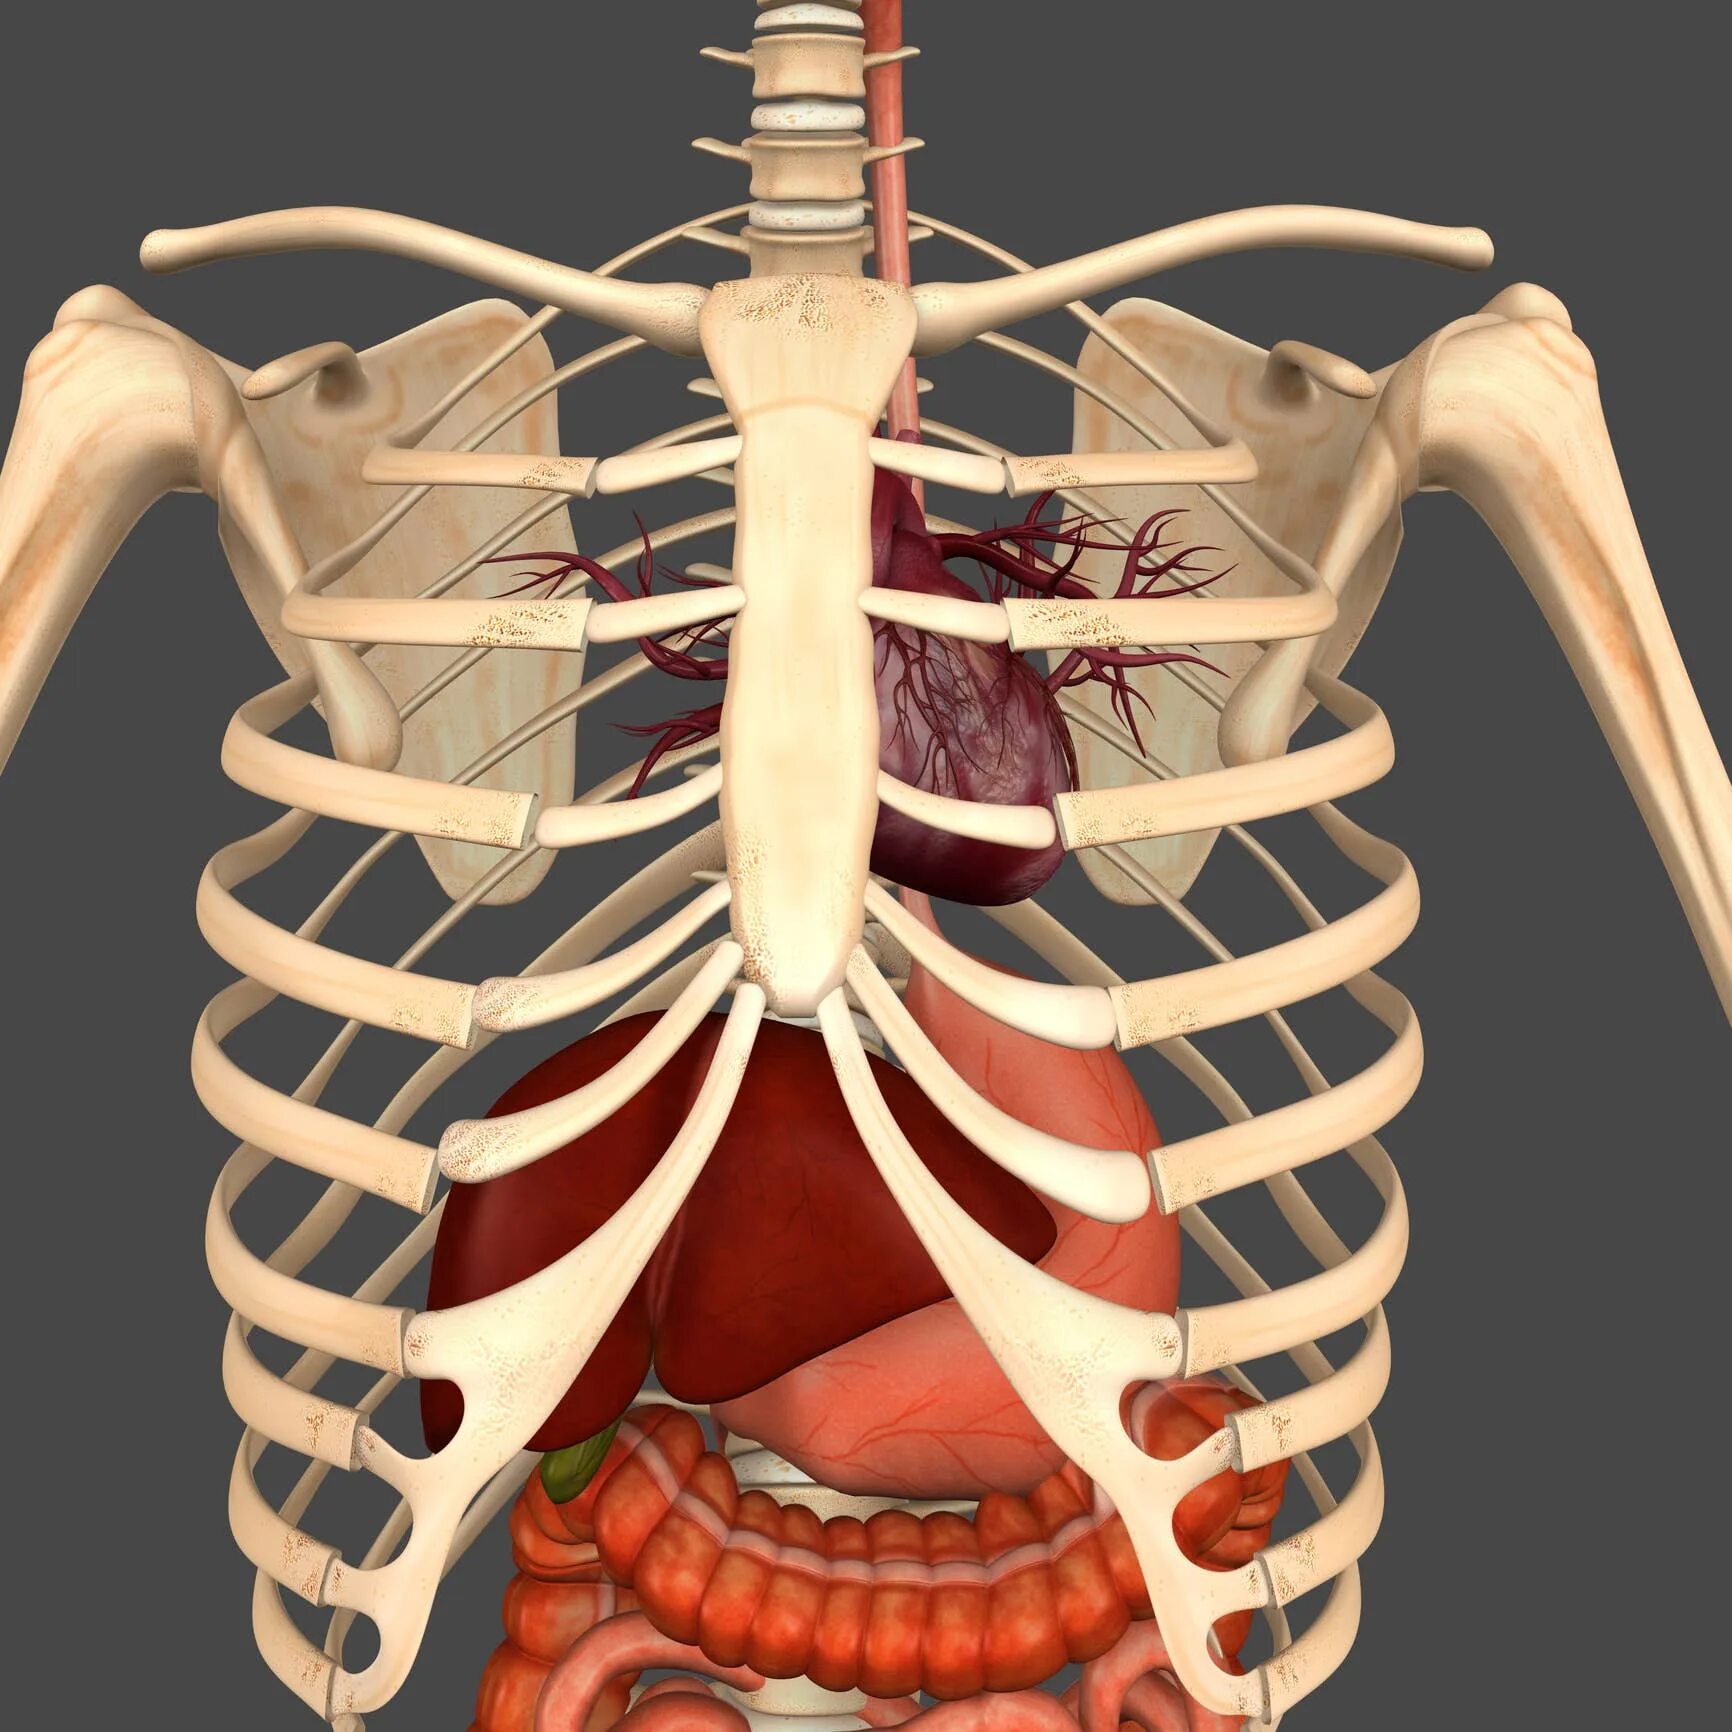 Анатомия органов грудной клетки. Анатомия грудной клетки человека с органами. Анатомия человека органы с ребрами.